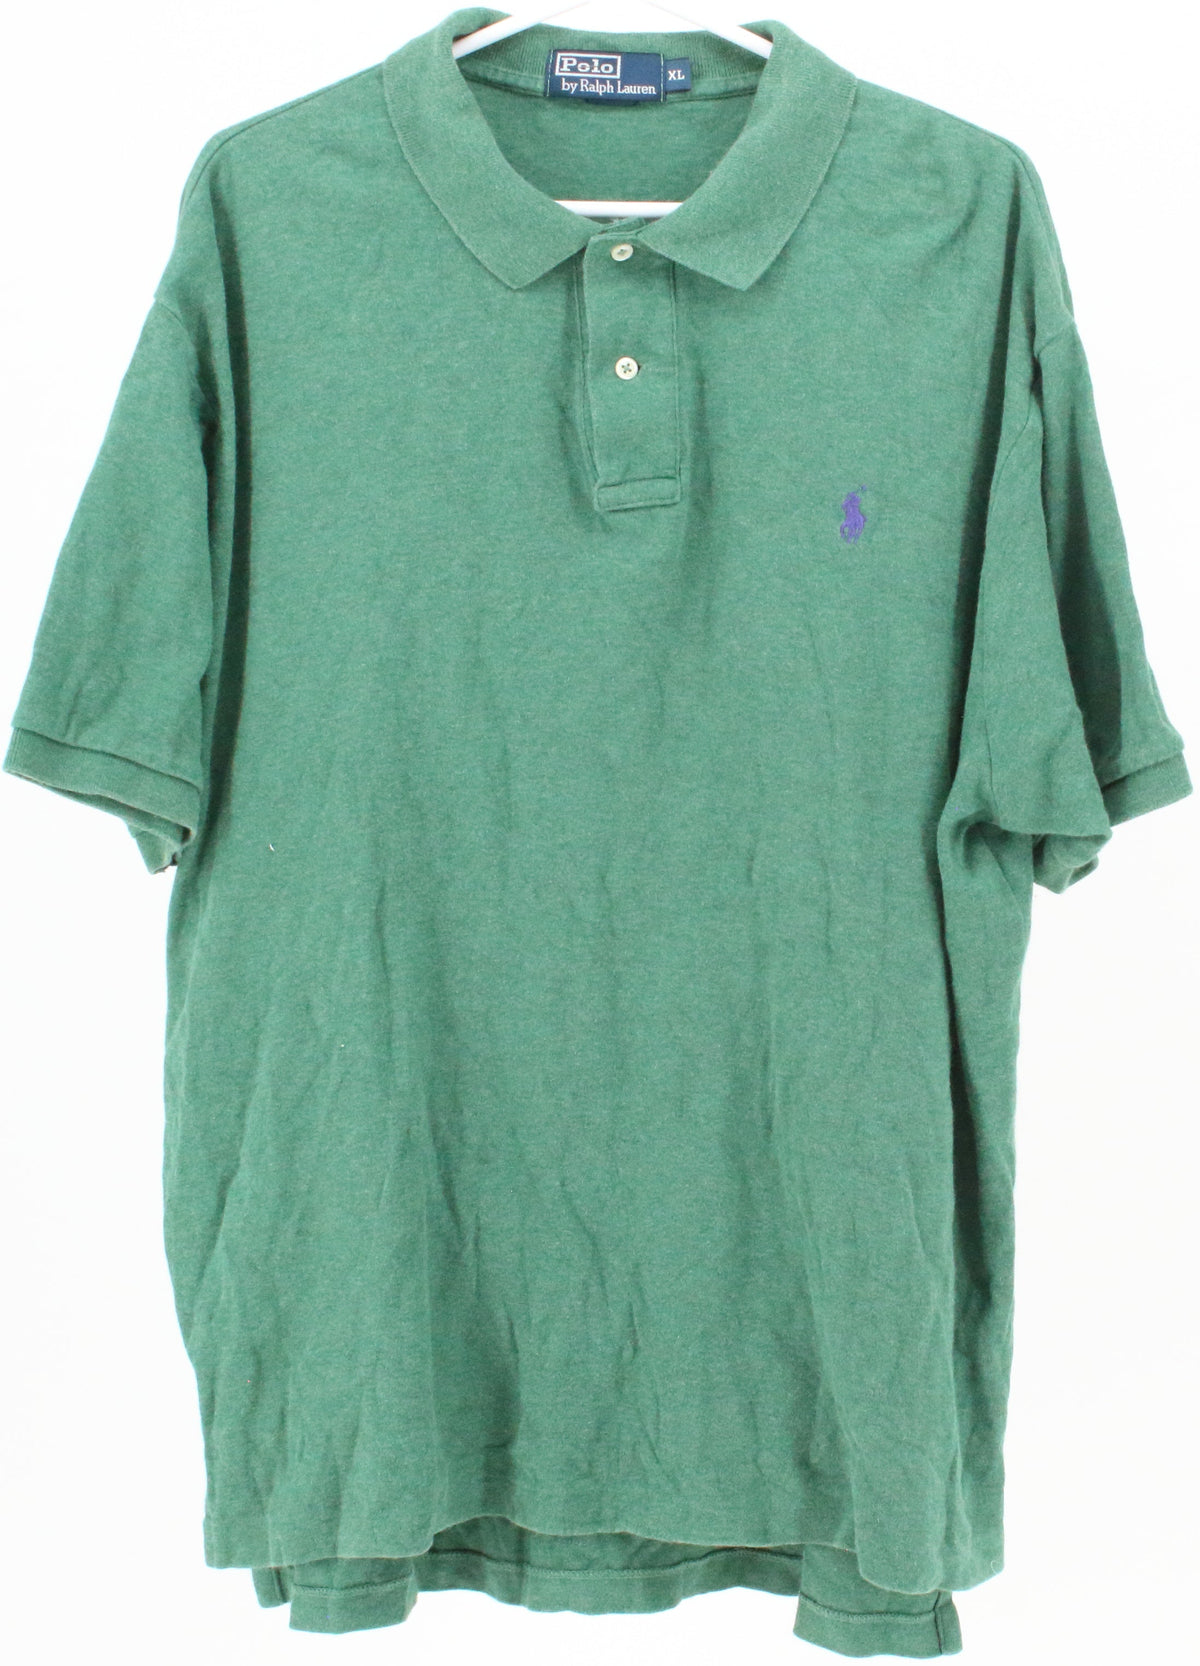 Polo by Ralph Lauren Green Golf Shirt